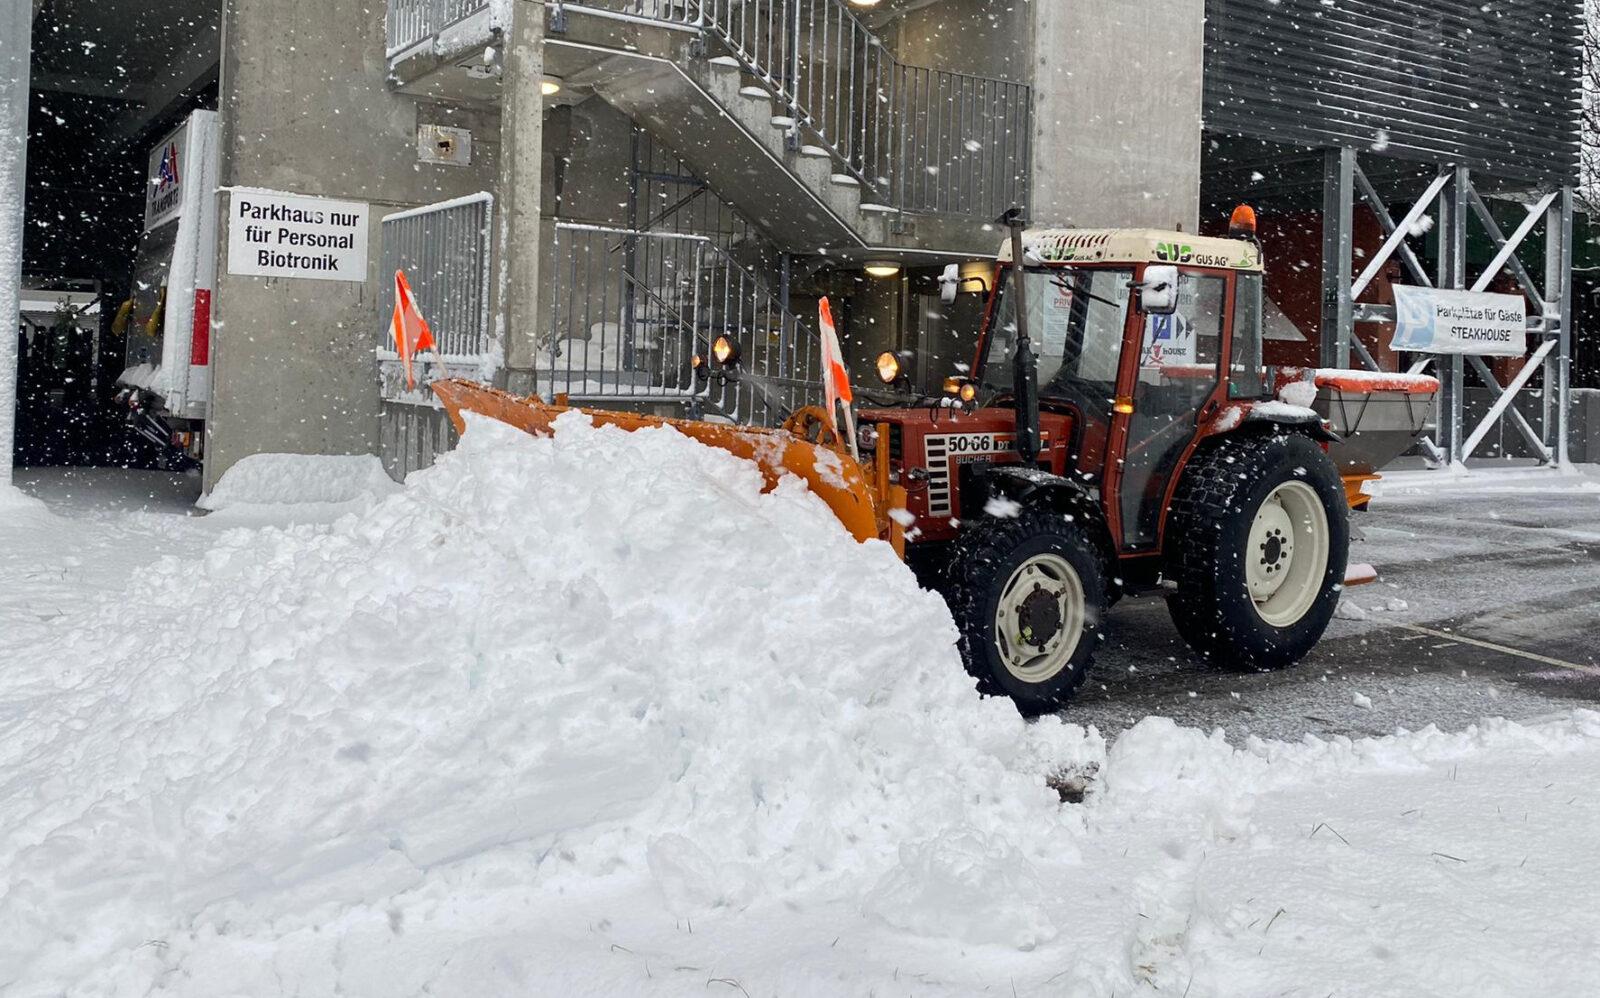 Der Traktor mit Pfadschlitten räumt den Schnee auf einem Industriegelände.